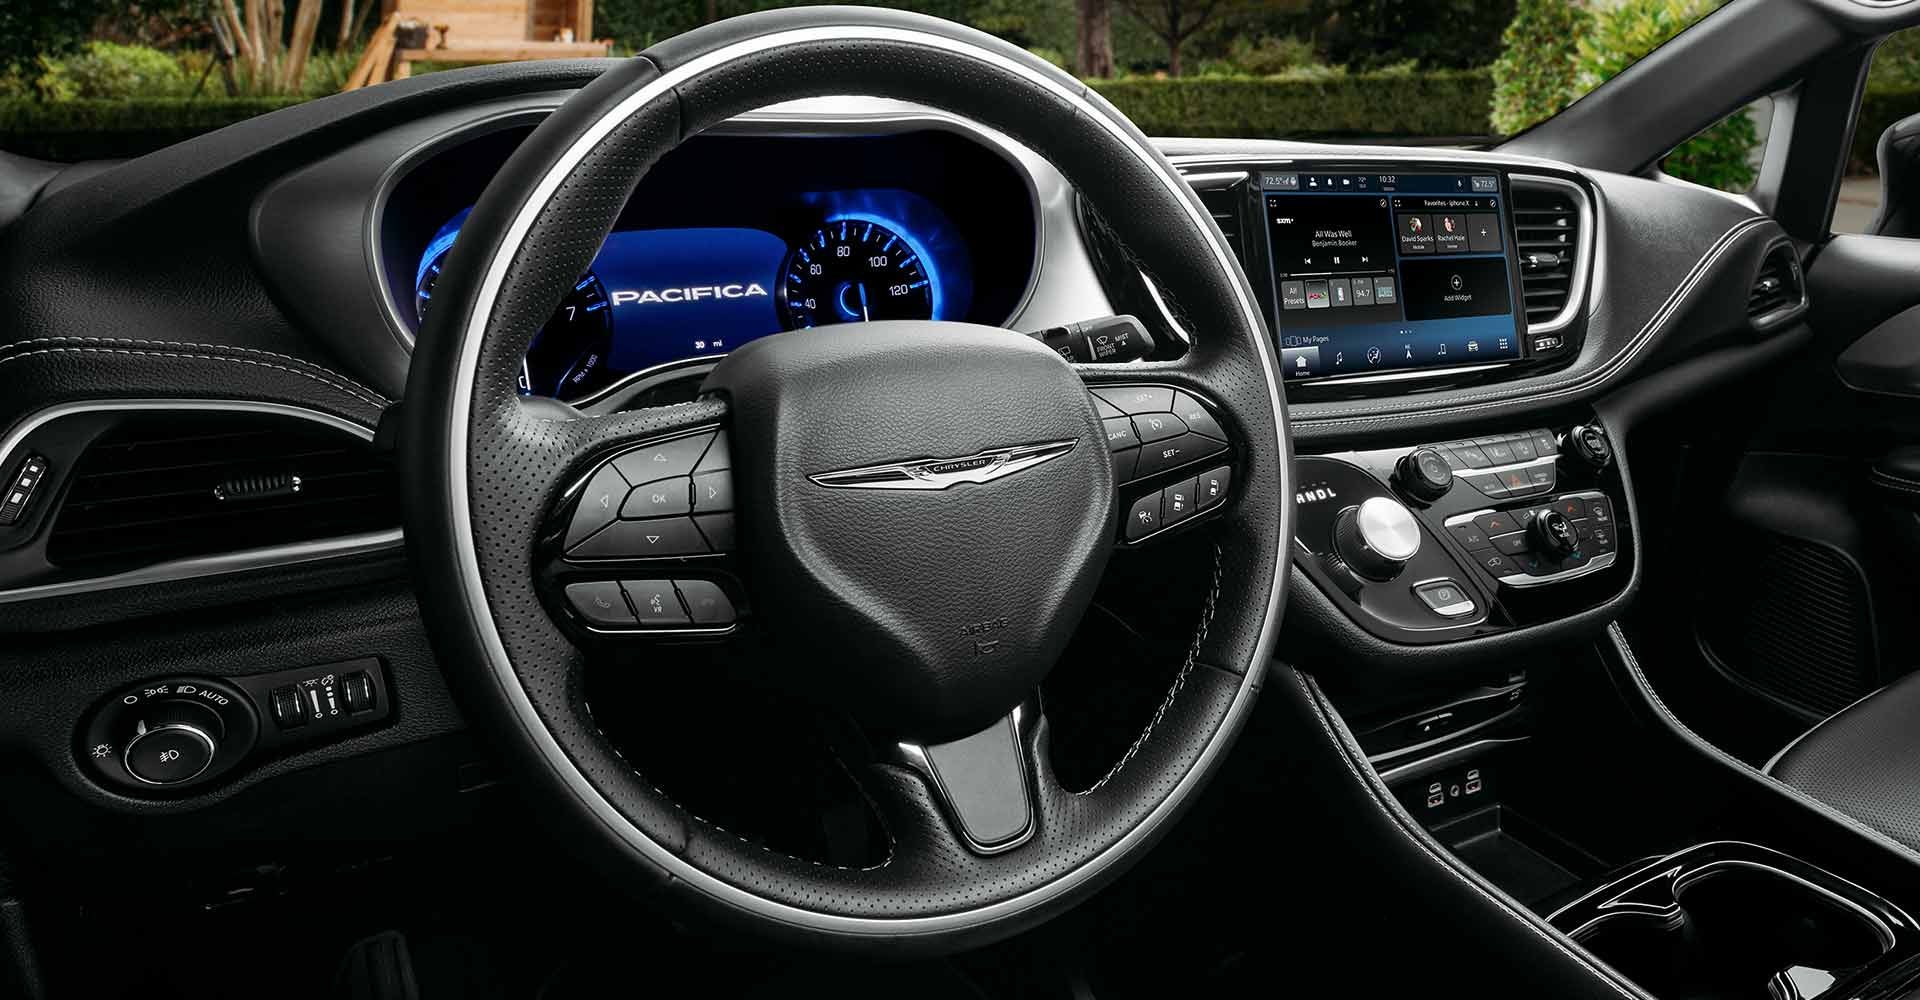 2021 Chrysler Pacifica interior